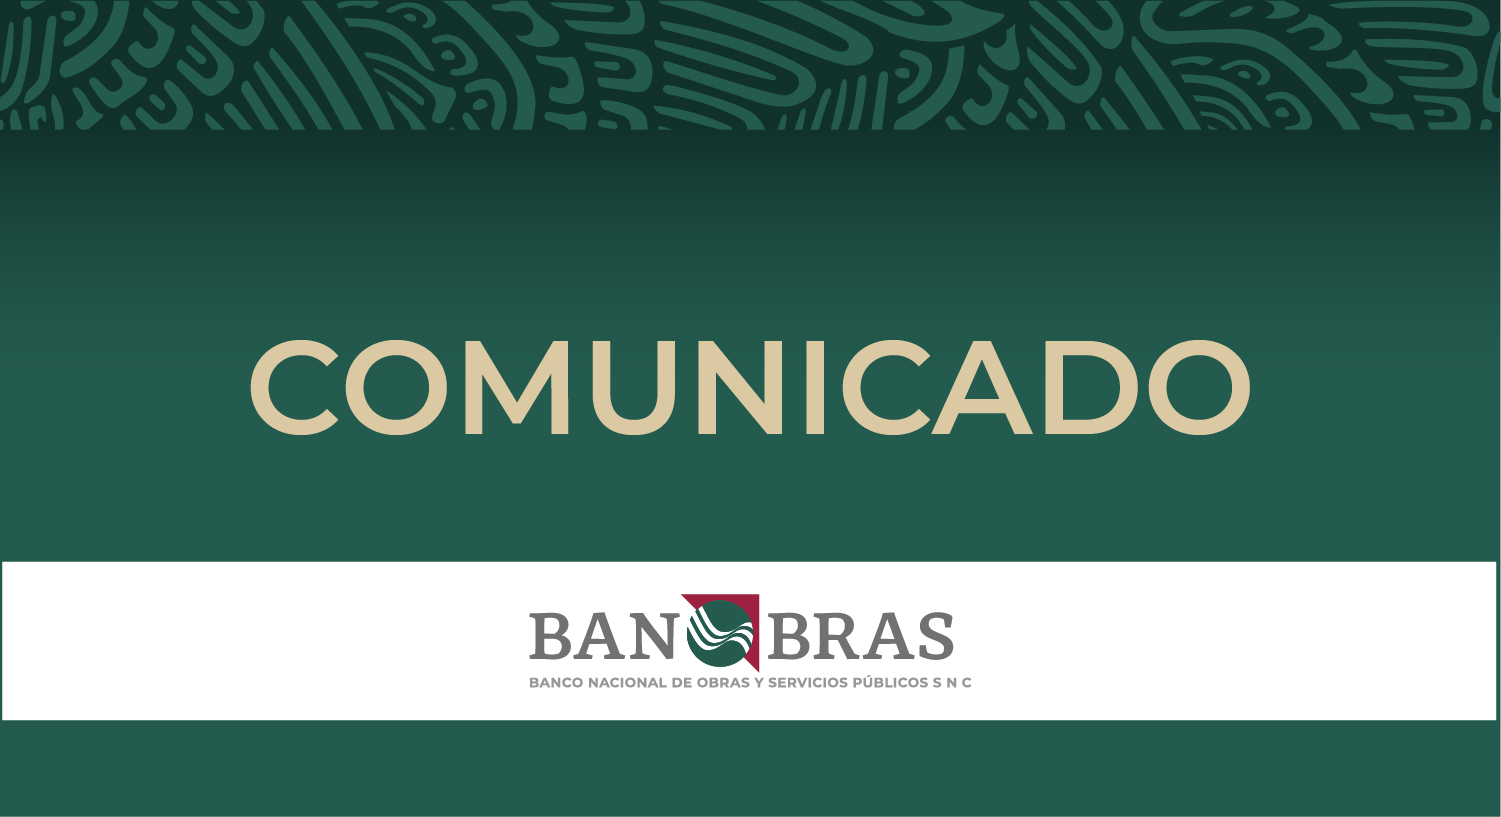 Solo en esta administración, Banobras ha emitido 12 bonos sustentables por un monto cercano a 35 mil millones de pesos lo que consolida al Banco como el principal emisor de este tipo de bonos en el mercado local. 